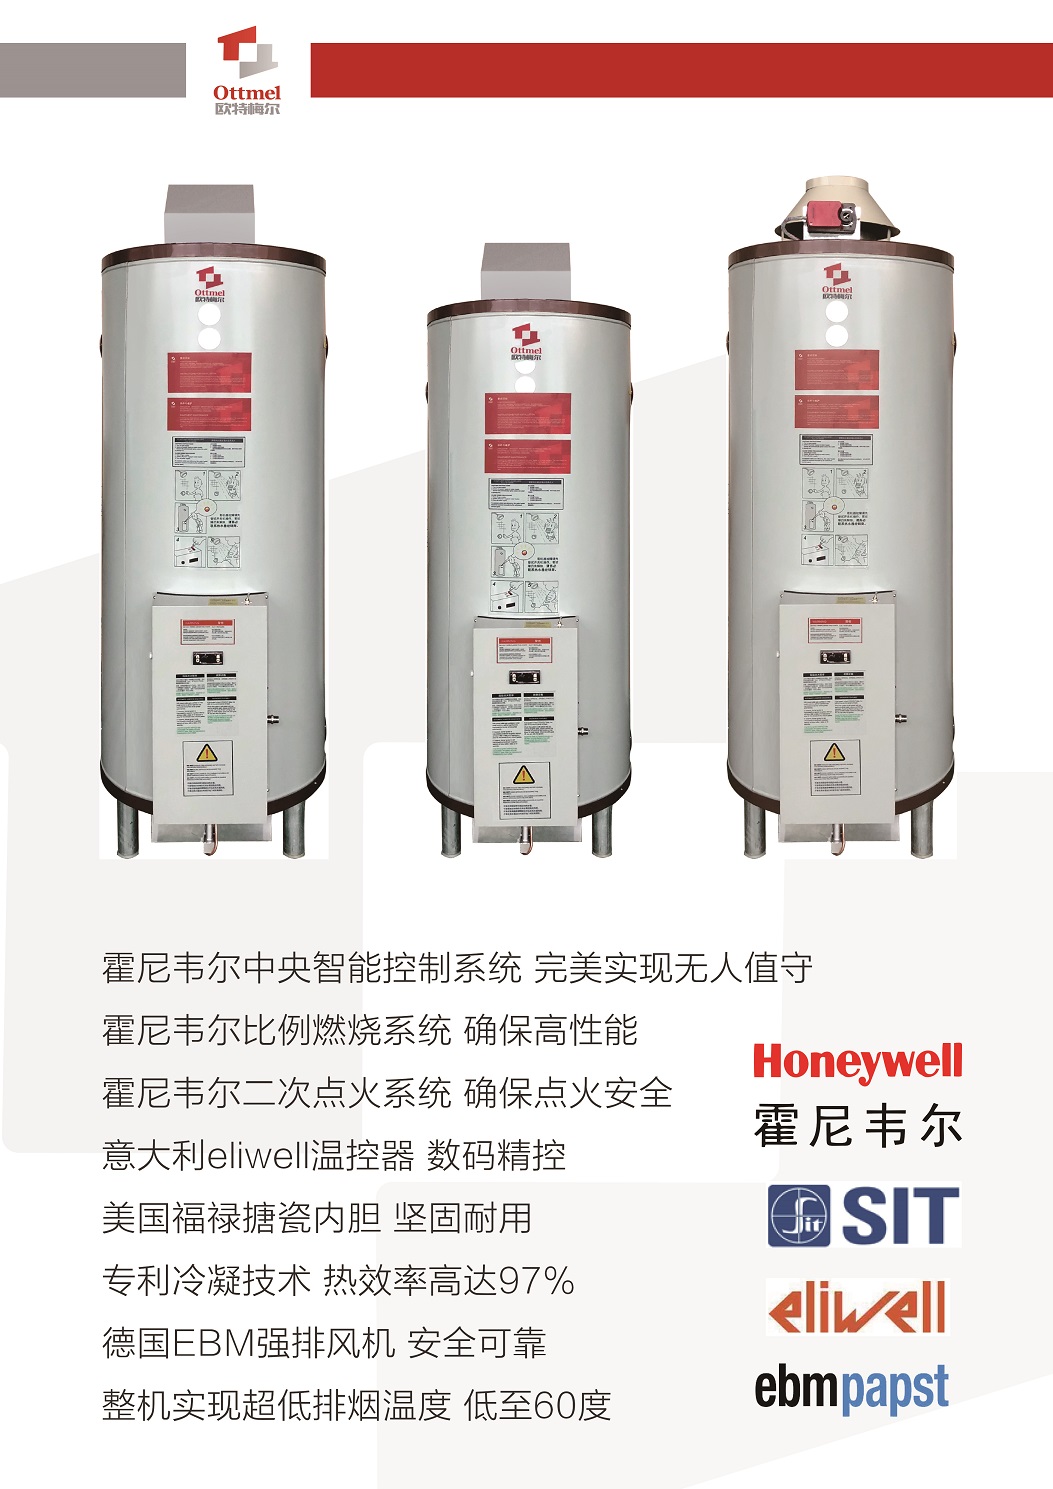 重庆BTC容积式热水器联系人 欢迎咨询 欧特梅尔新能源供应